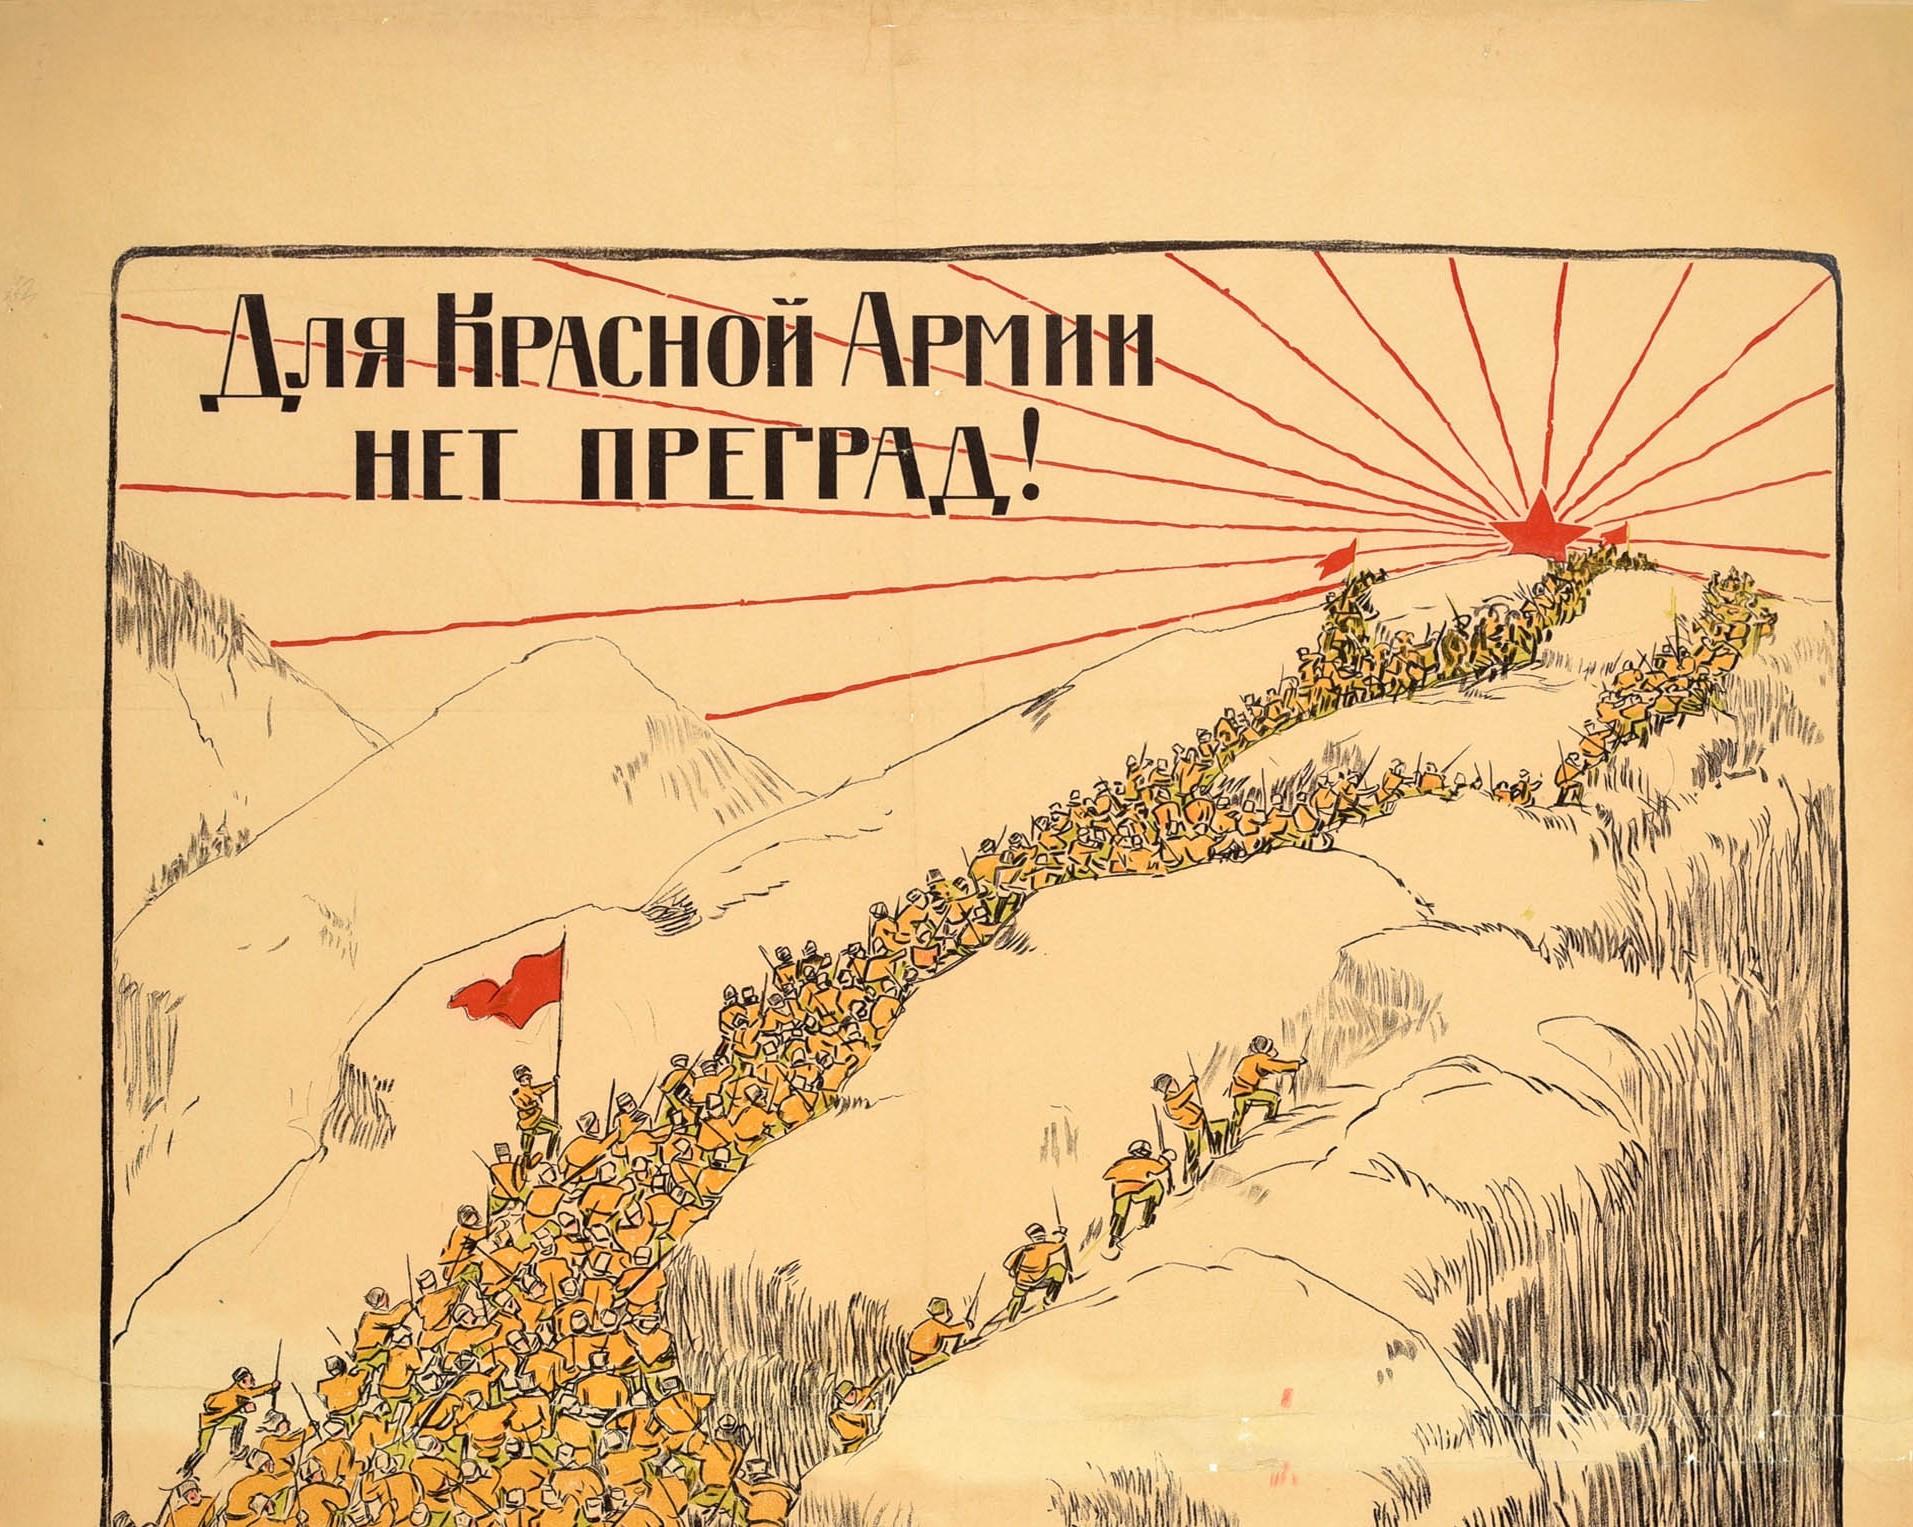 Original antikes sowjetisches Propagandaplakat - Für die Rote Armee gibt es keine Hindernisse! - mit einer großartigen Illustration sowjetischer Soldaten in Uniform mit Gewehren, die über ein unwegsames, hügeliges Gelände klettern, wobei die